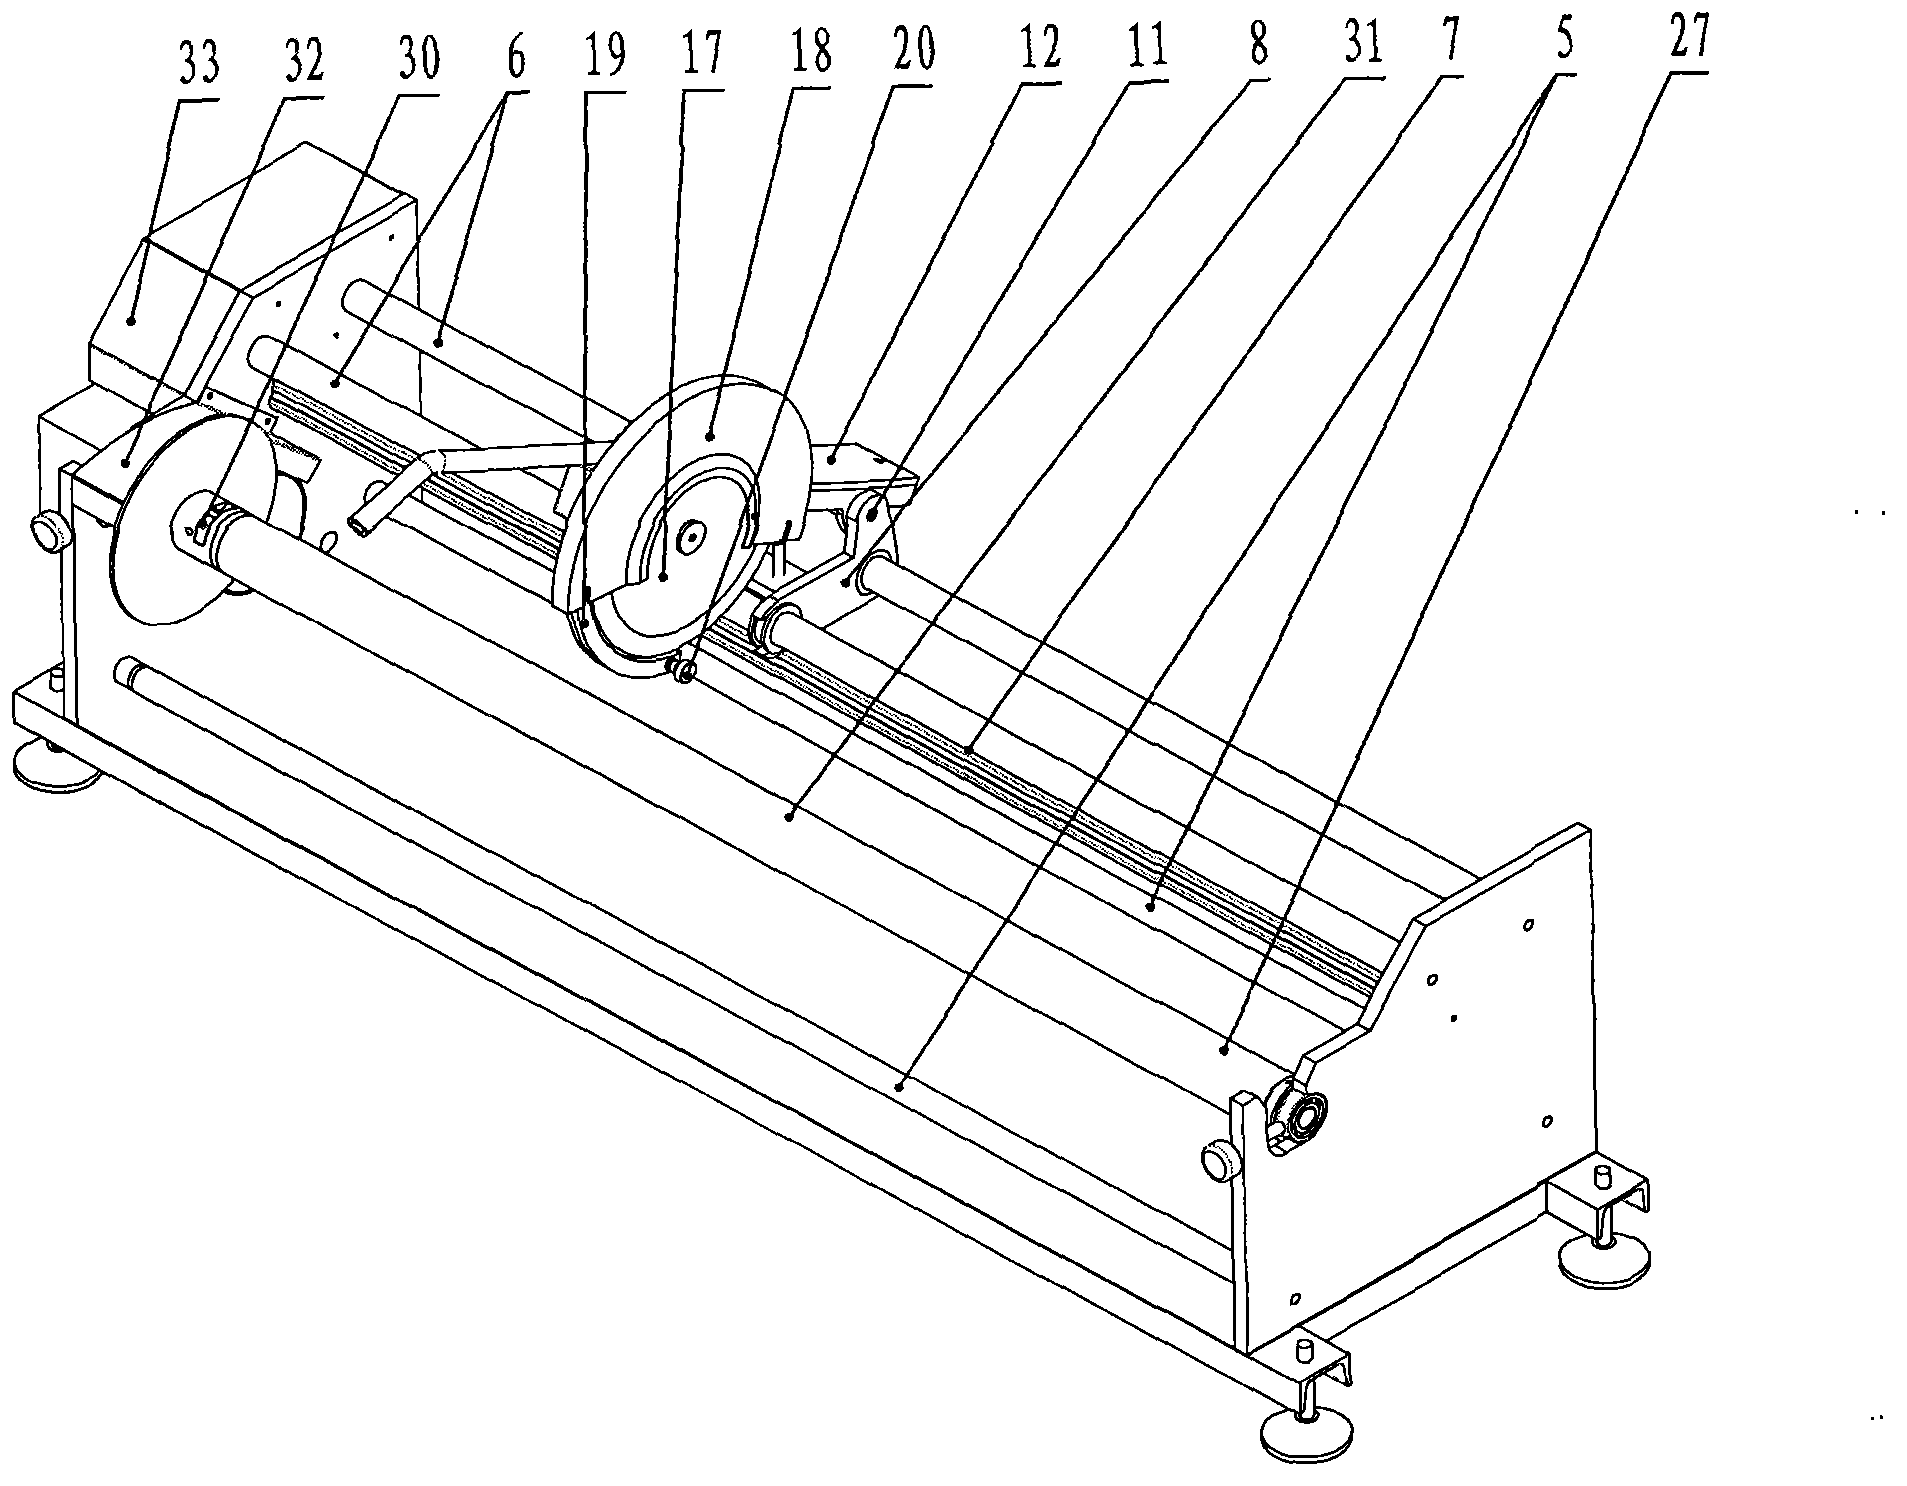 Cutting machine with circular cutter